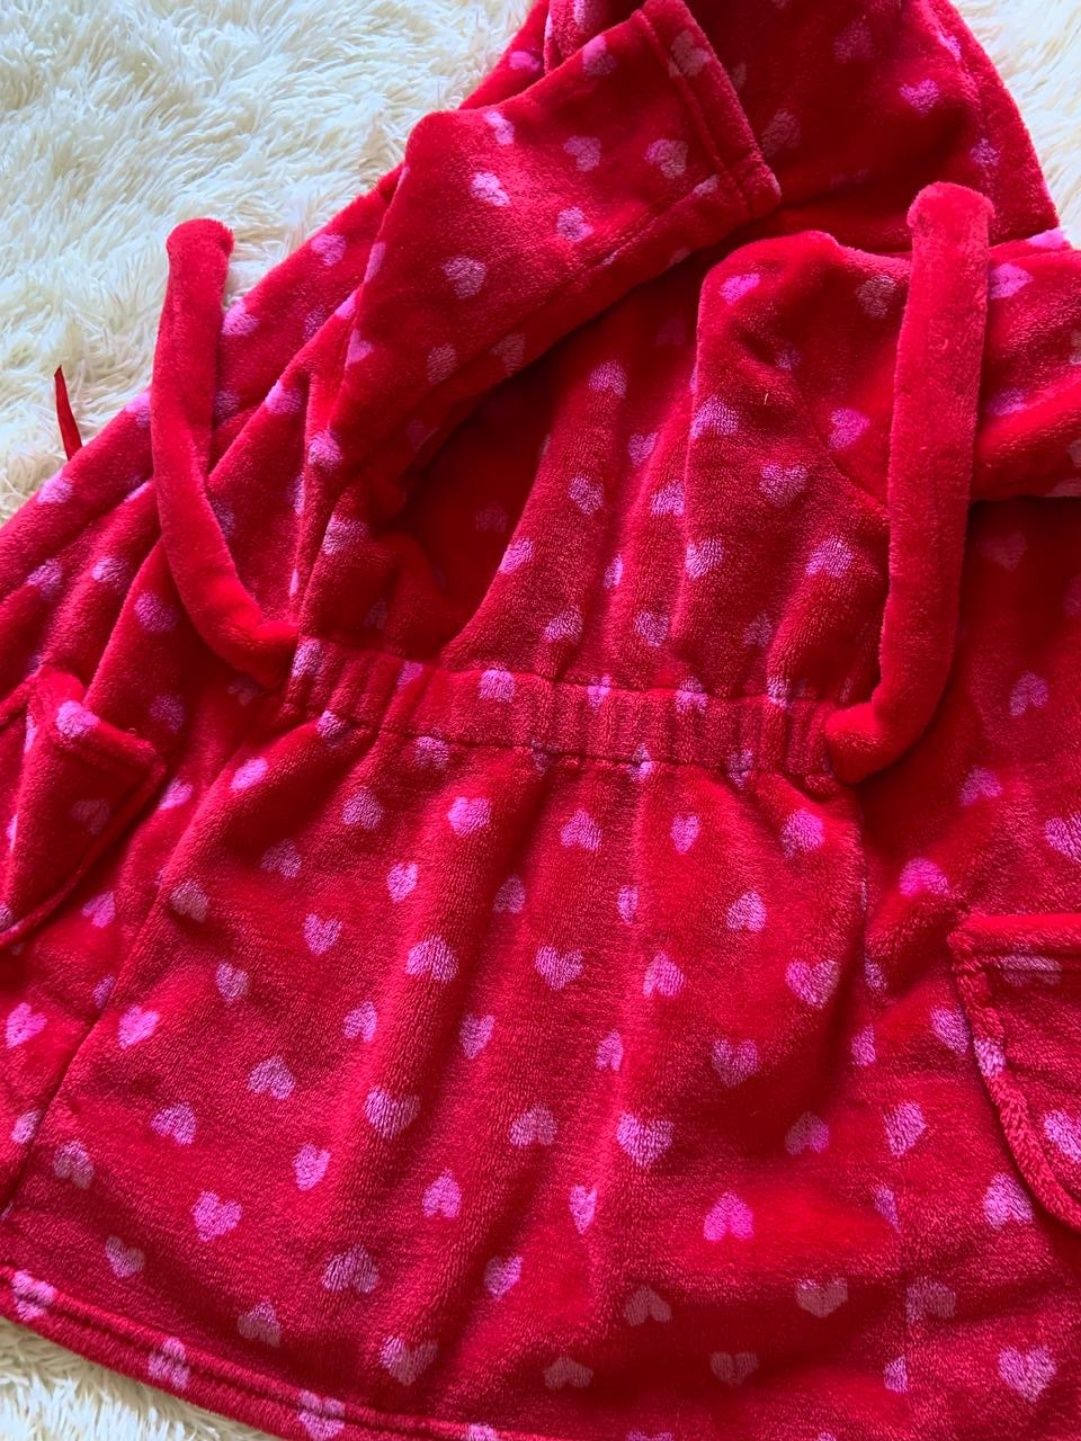 Детский махровый халат для девочки M'S 1.5-2 года